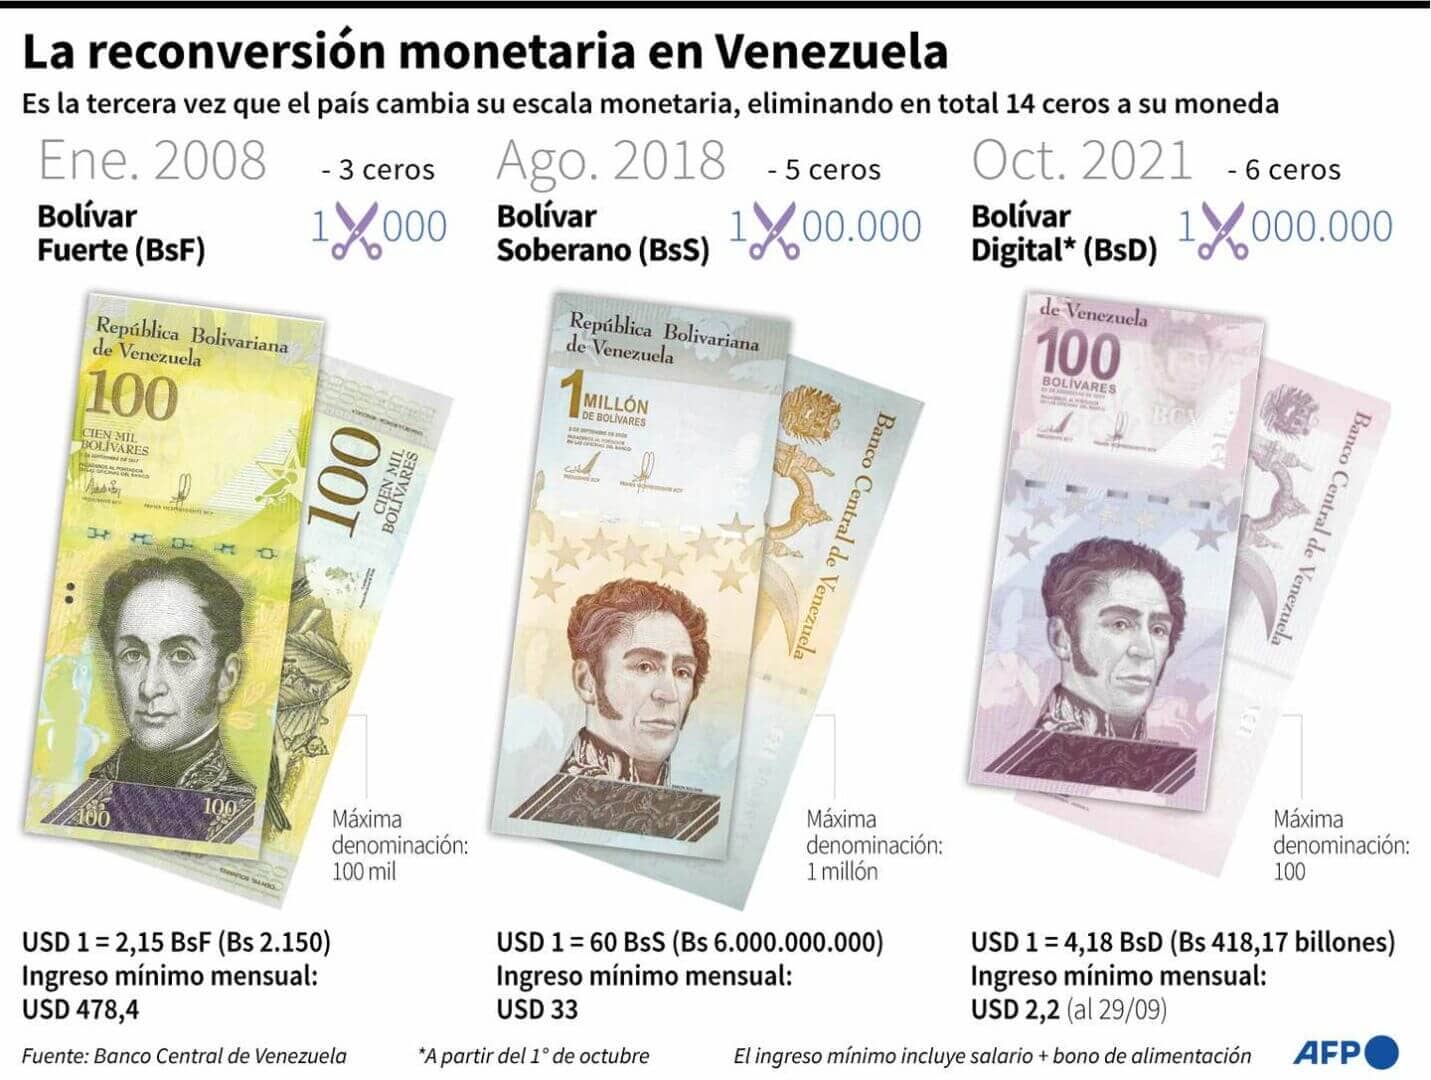 Venezuela hyperinflation catastrophique dernière années